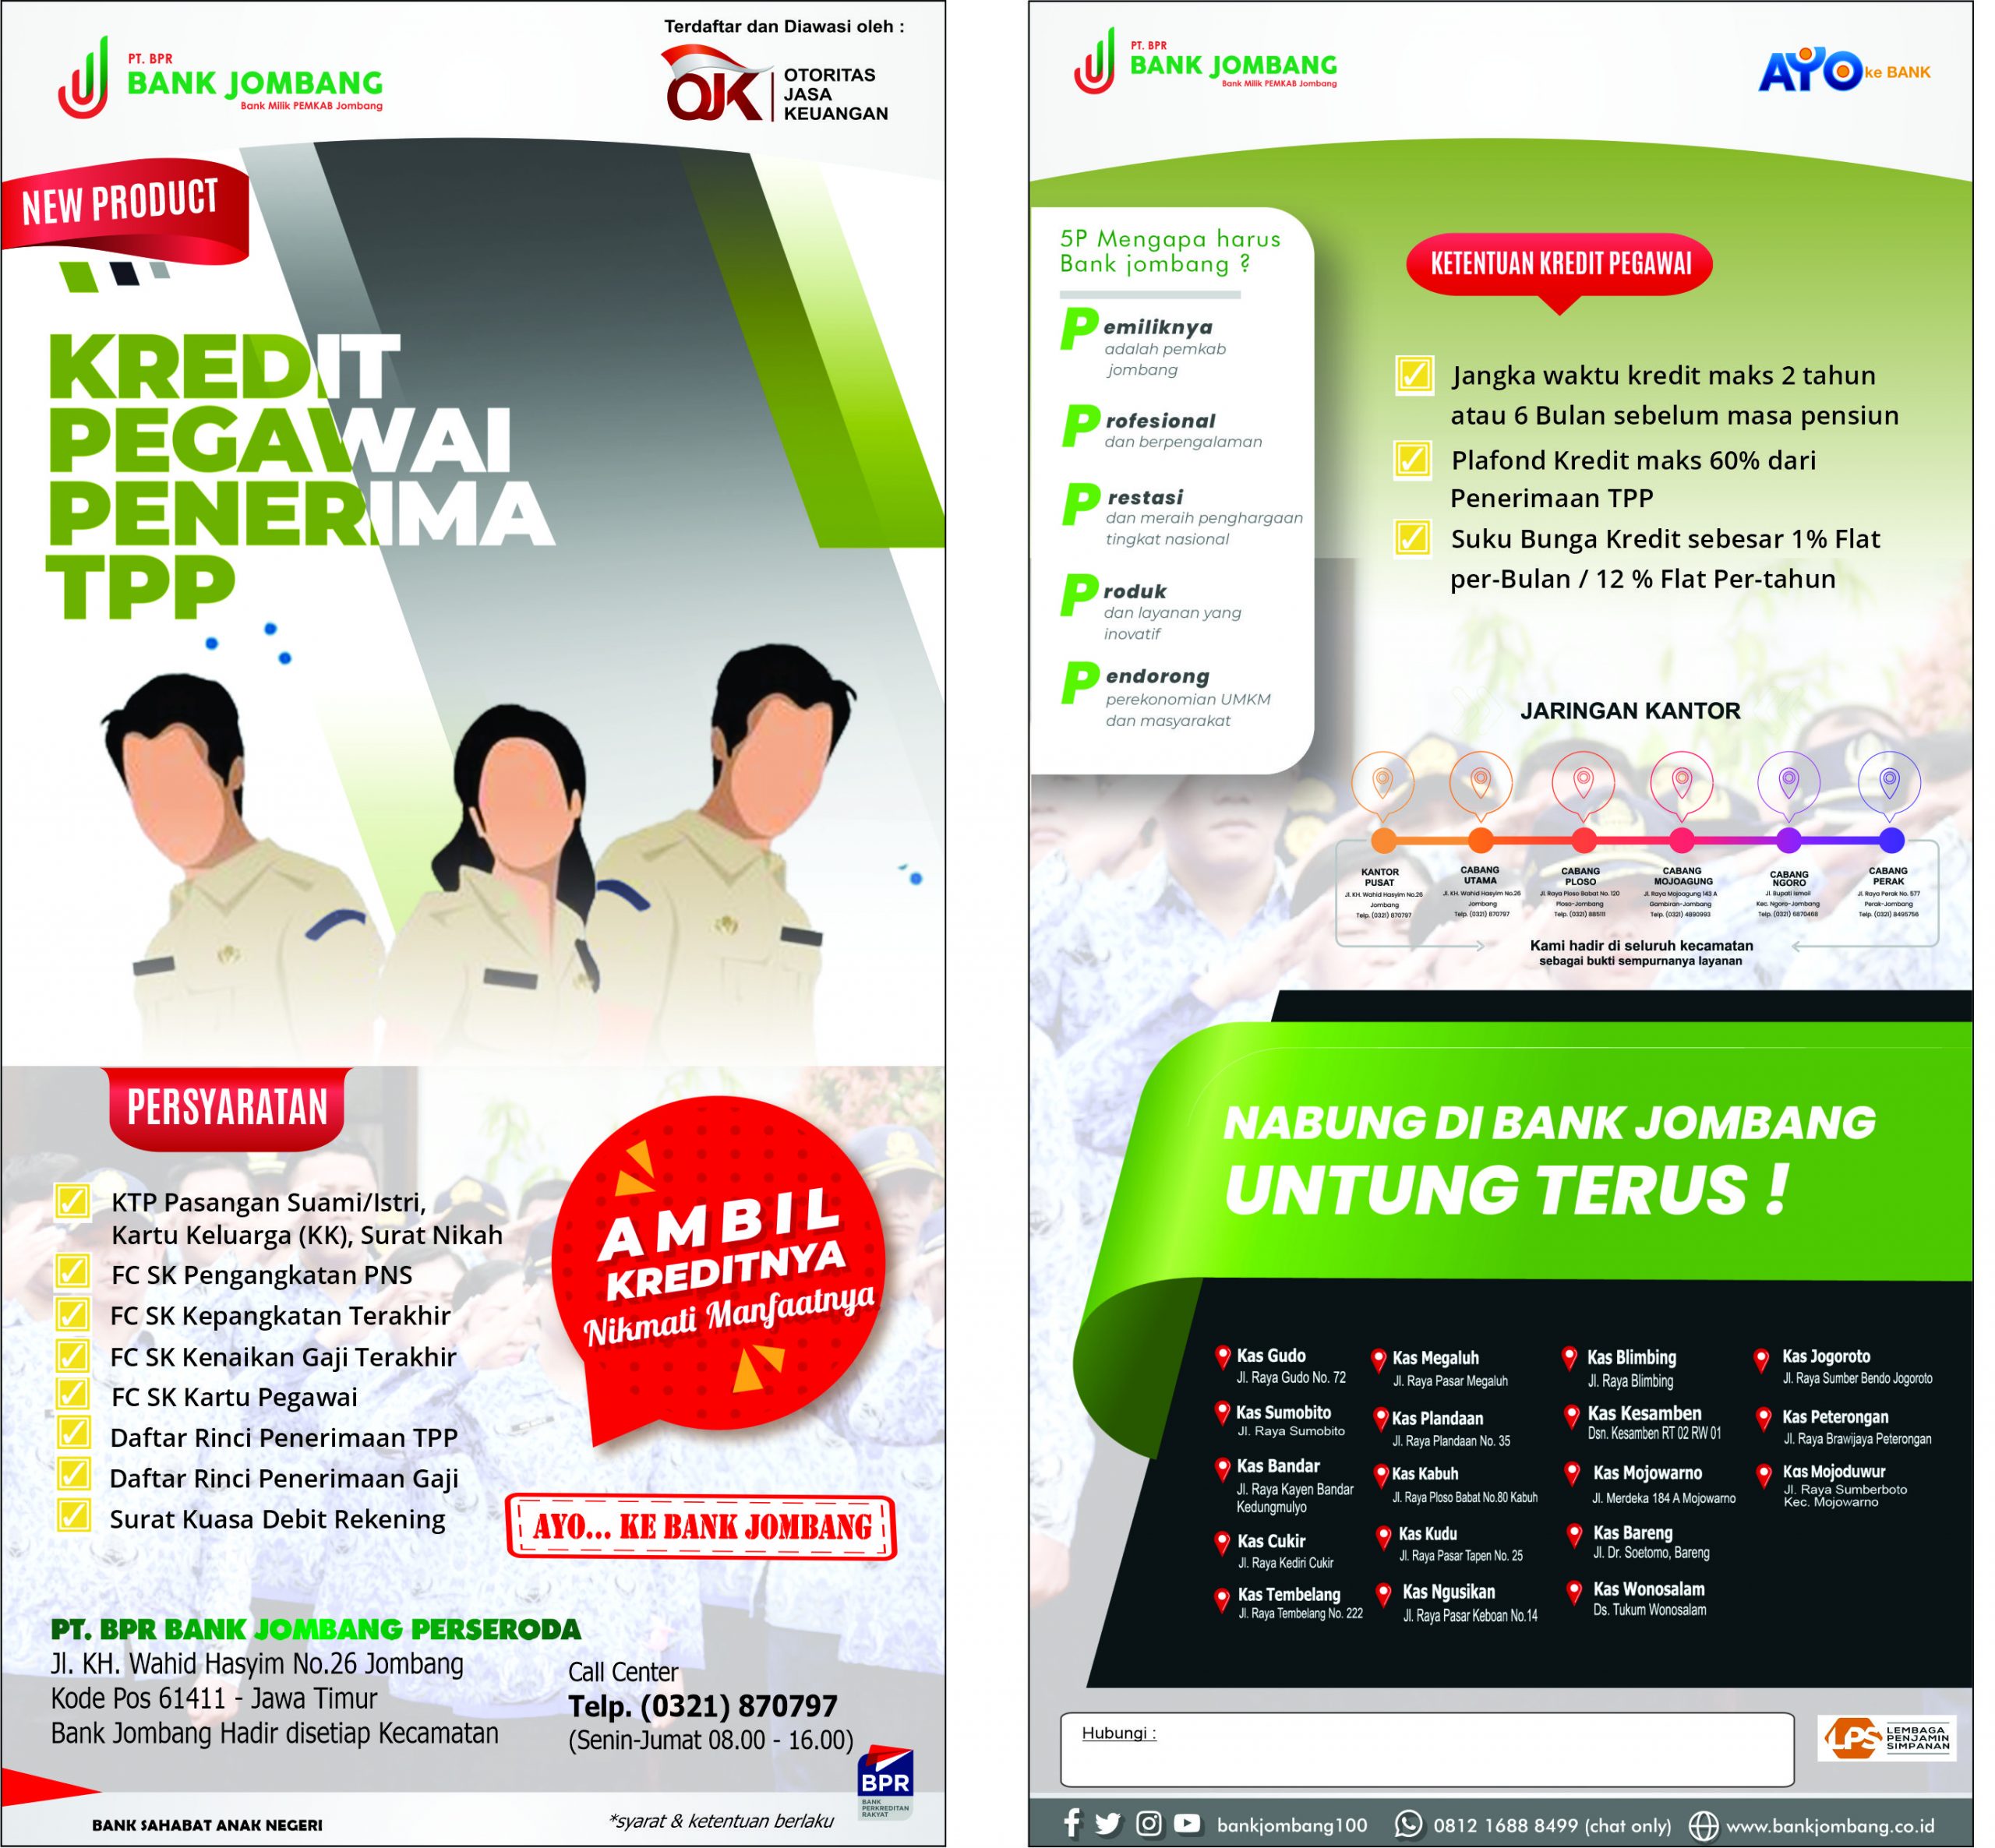 Kredit Penerima TPP – PT. BPR Bank Jombang Perseroda